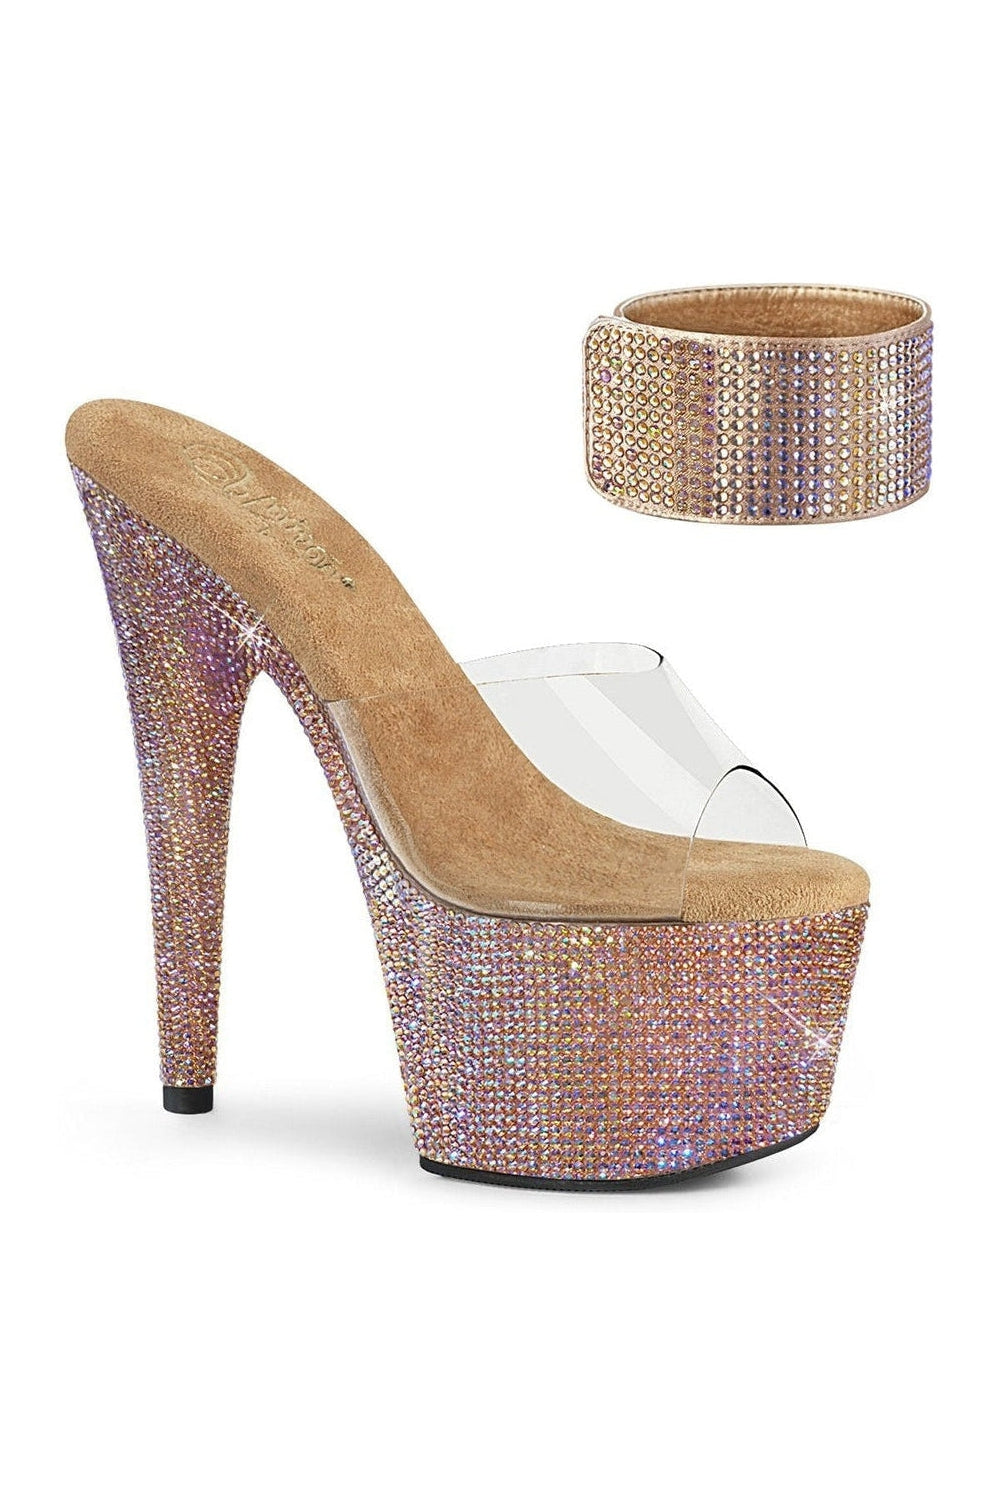 Pleaser Rose Gold Sandals Platform Stripper Shoes | Buy at Sexyshoes.com